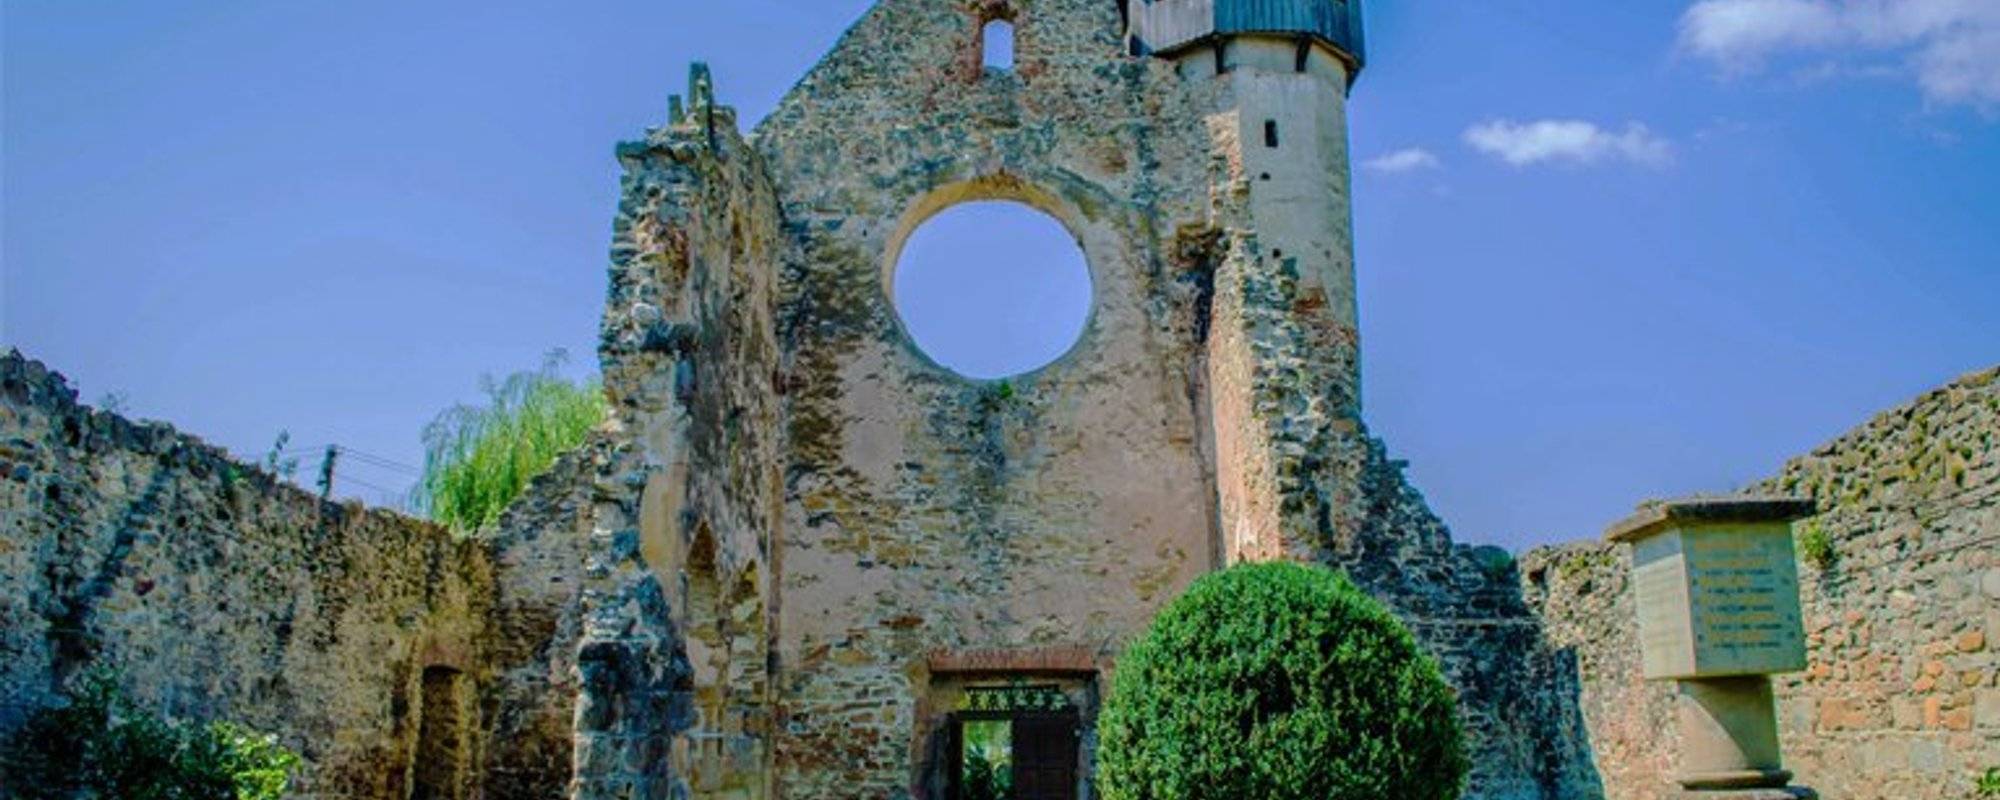 Let's travel together #51 - The Cistercian Abbey from Cârţa (Abaţia cisterciană de la Cârţa)